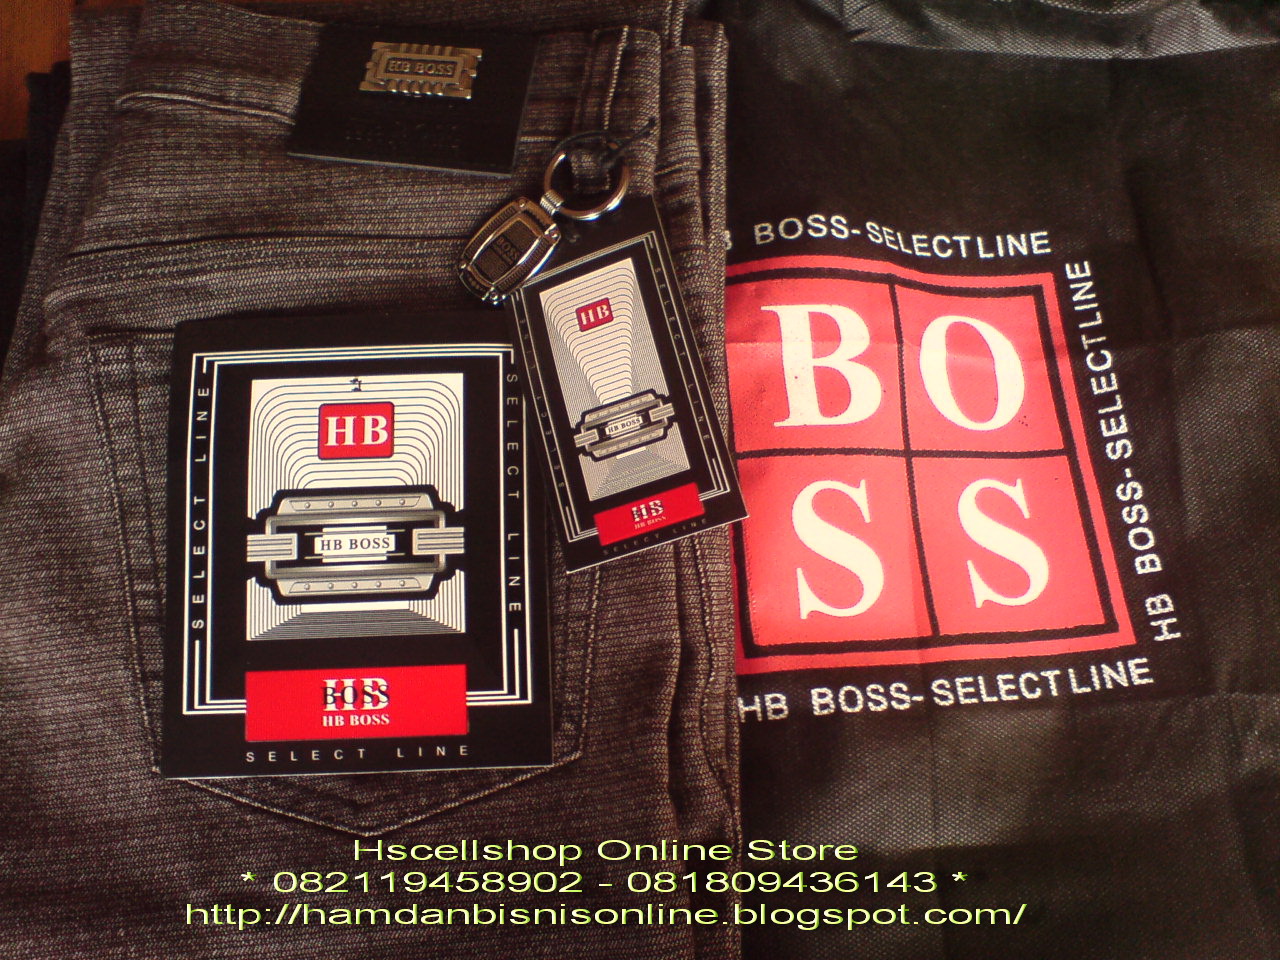 Sidestore. Hugo Boss select line джинсы. Классика джинсы Hugo Boss. Джинсы Hugo Boss made in Romania. Джинсы Хуго босс сертификат Турция.